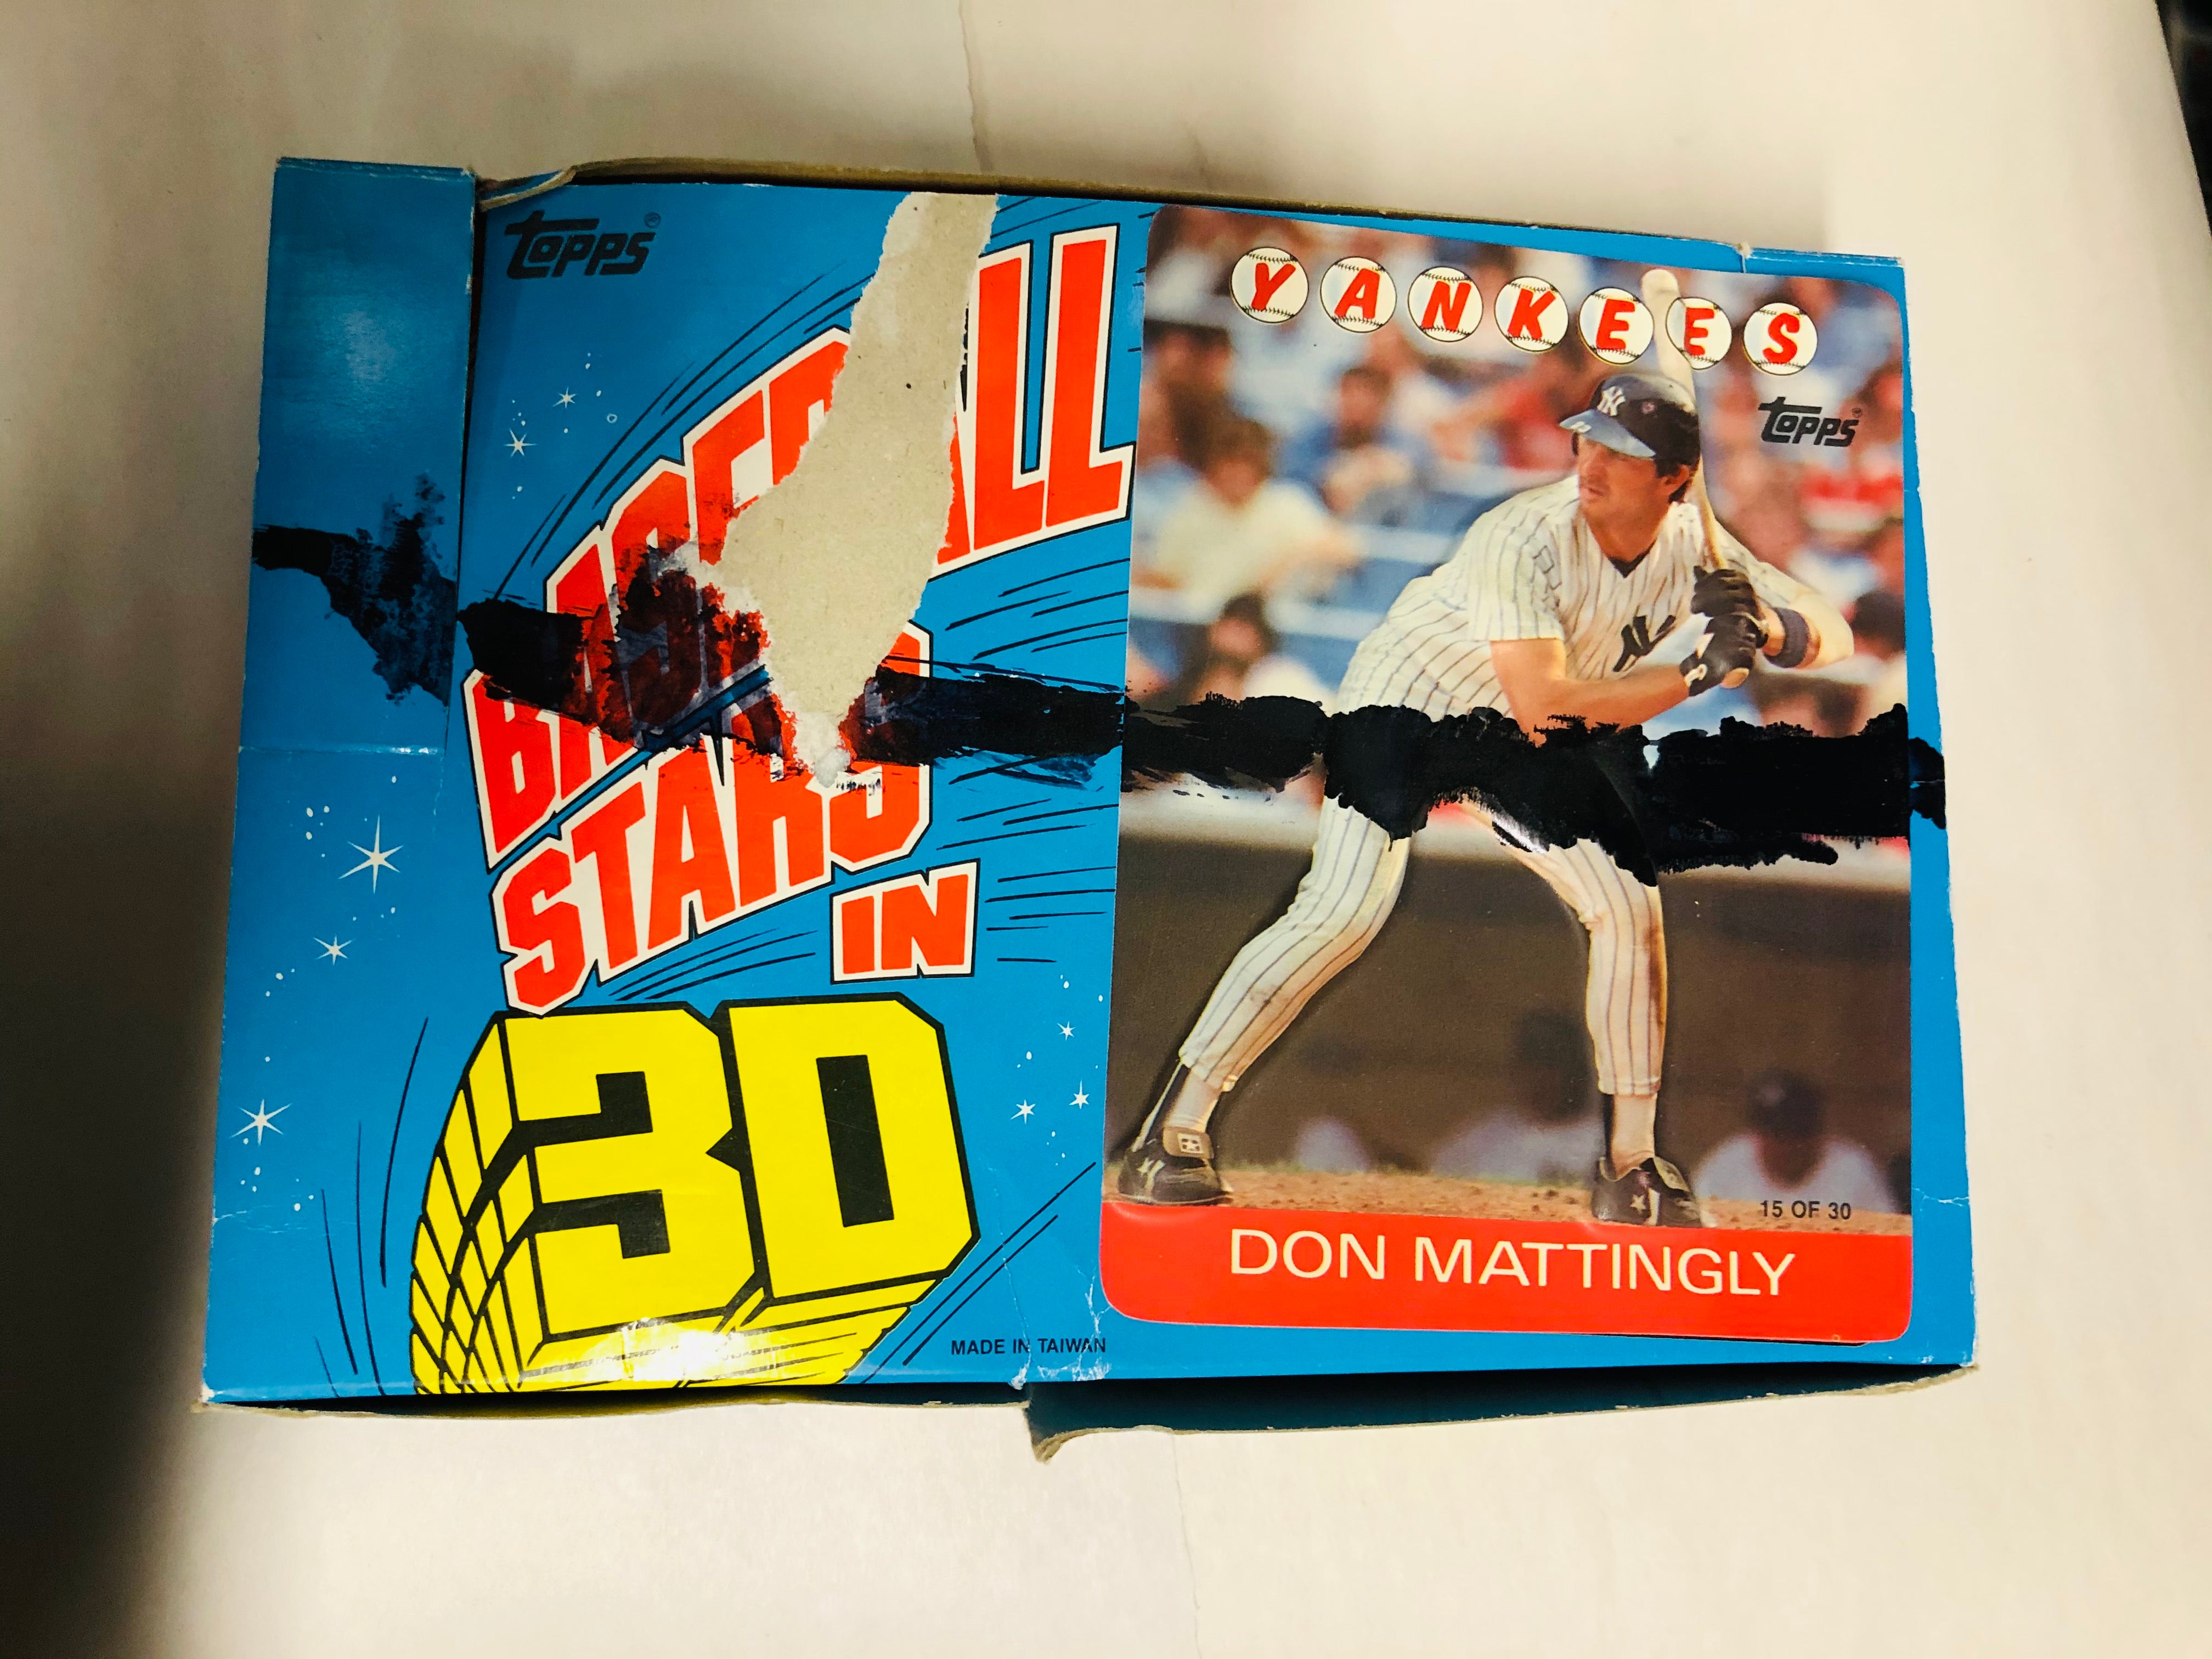 1986 Topps 3-D Baseball cards box